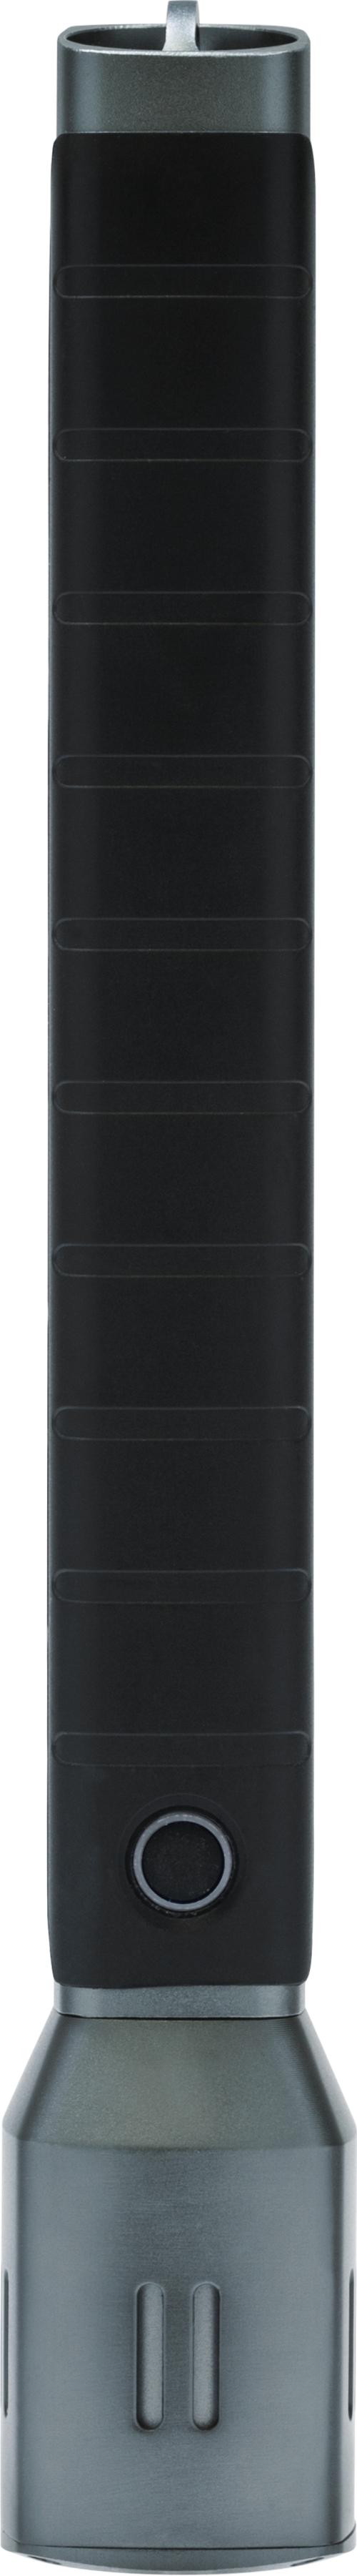 Taschenlampe TL-530, 30,6 cm